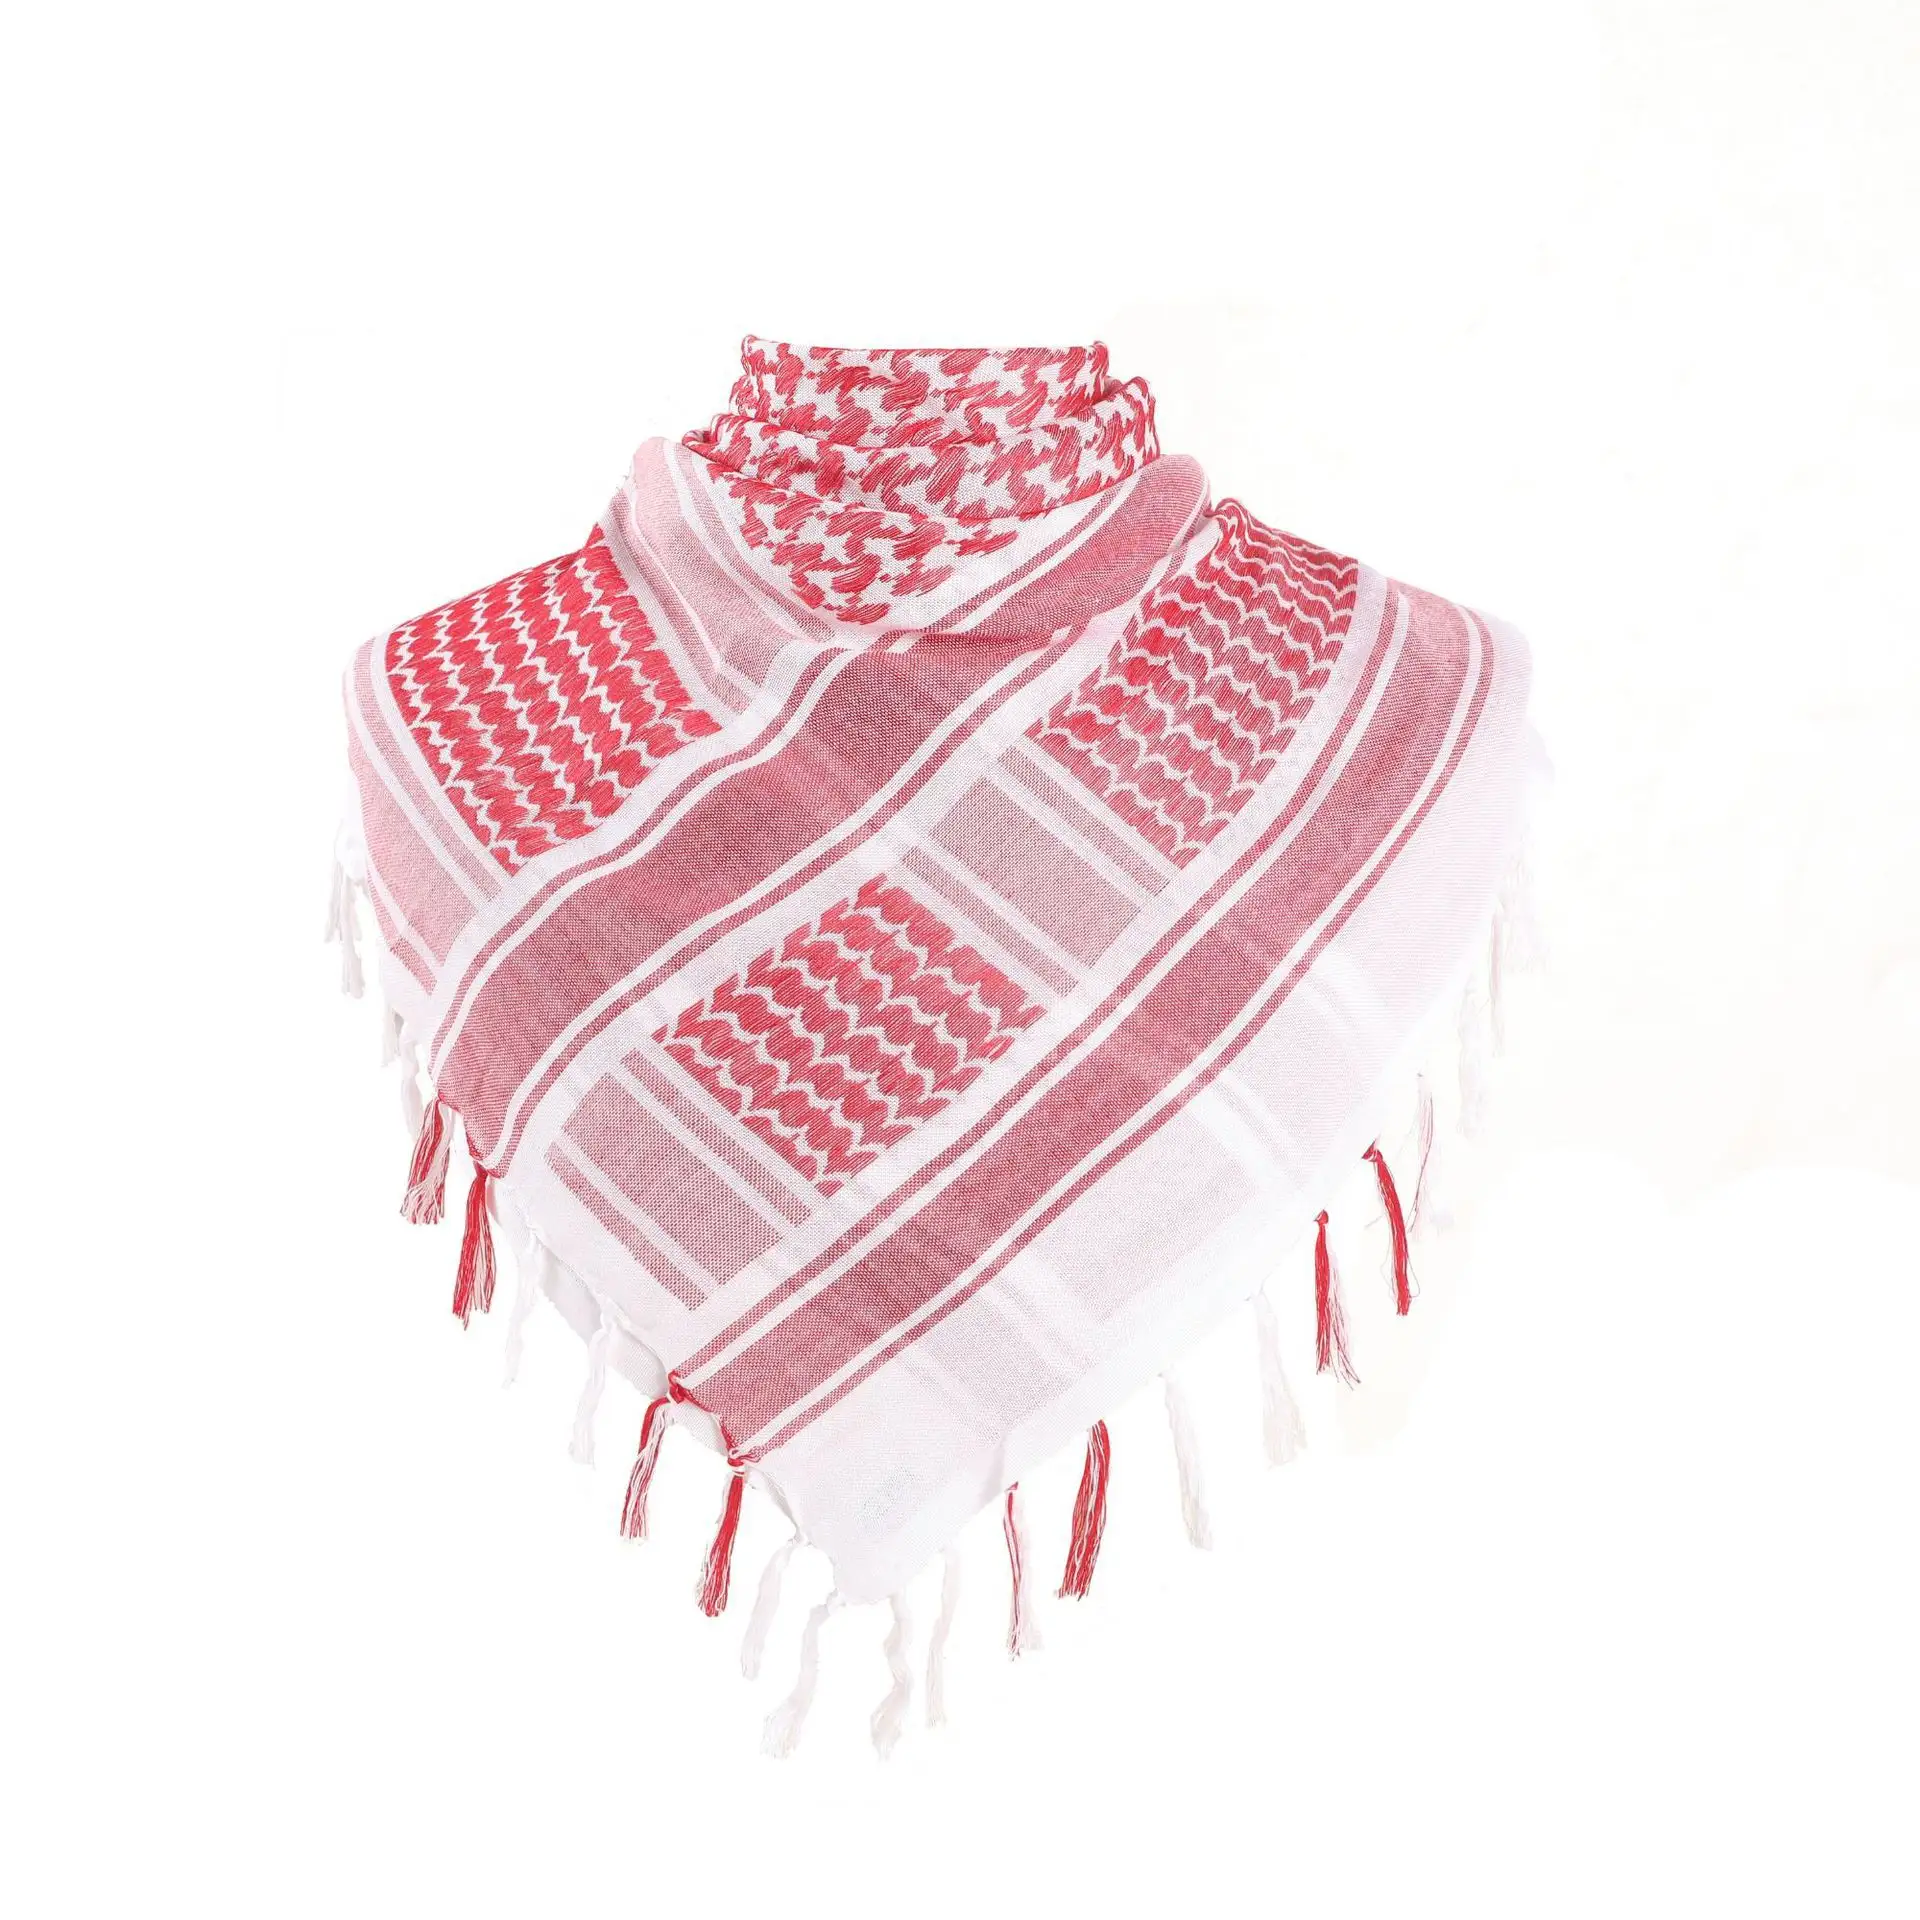 Commercio all'ingrosso di alta qualità rosso e bianco palestina Yashmagh Shemagh 100 cotone maschera arabo sciarpa da uomo 110*110CM